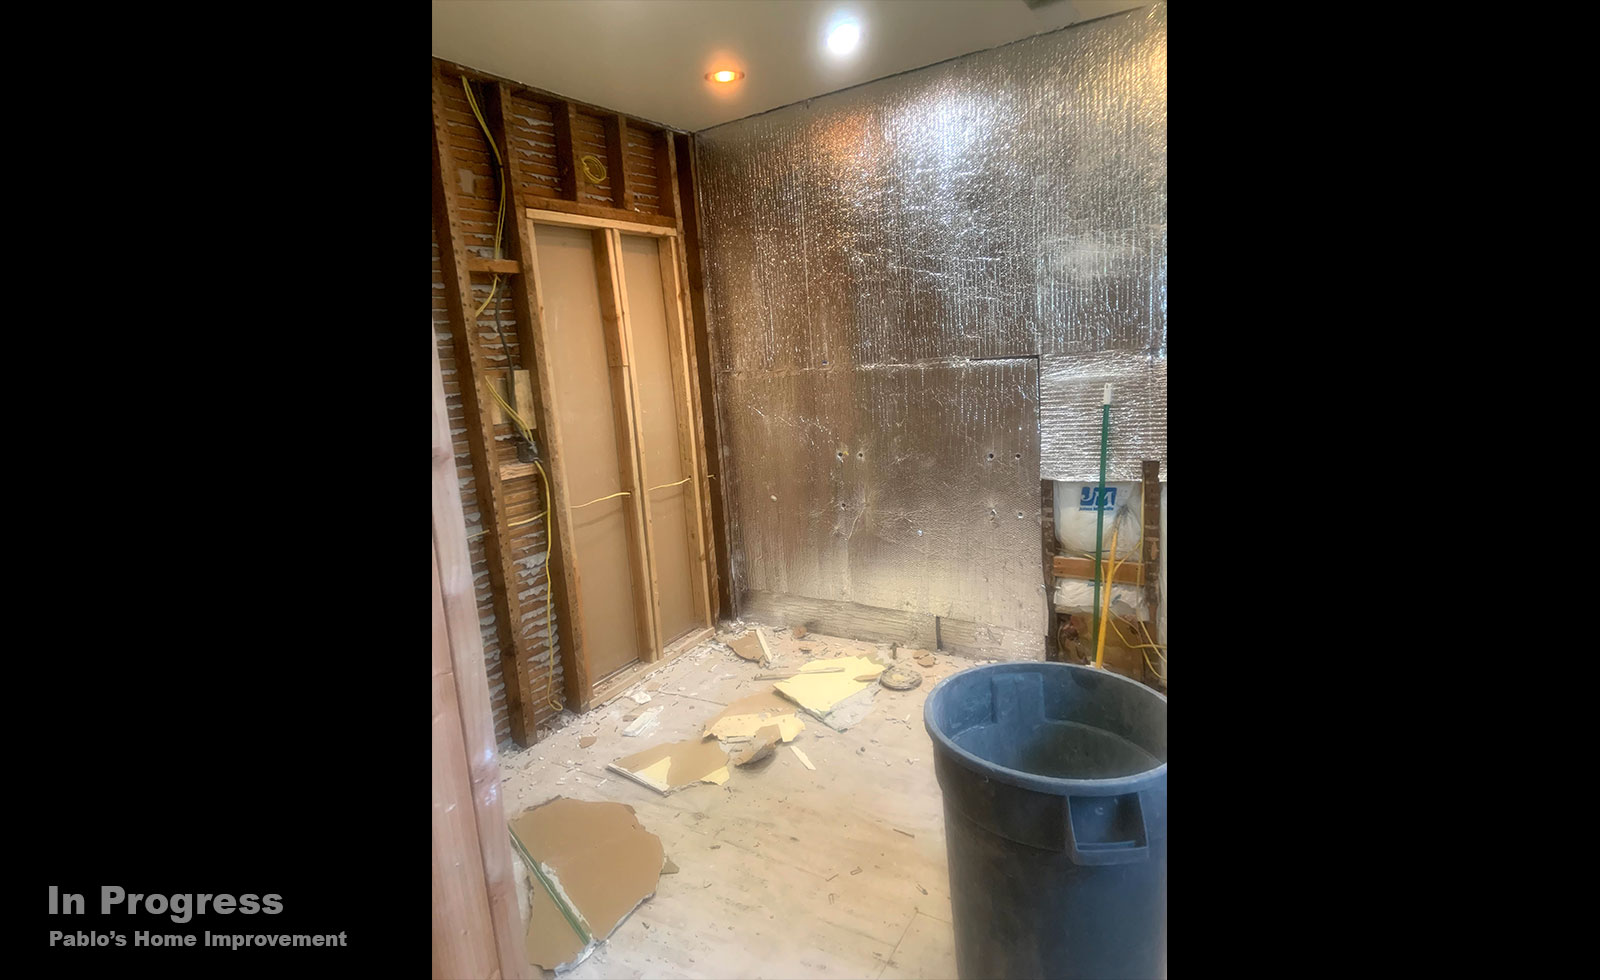 bathroom-renovation-teal-tile-dark-floor-inprogress1